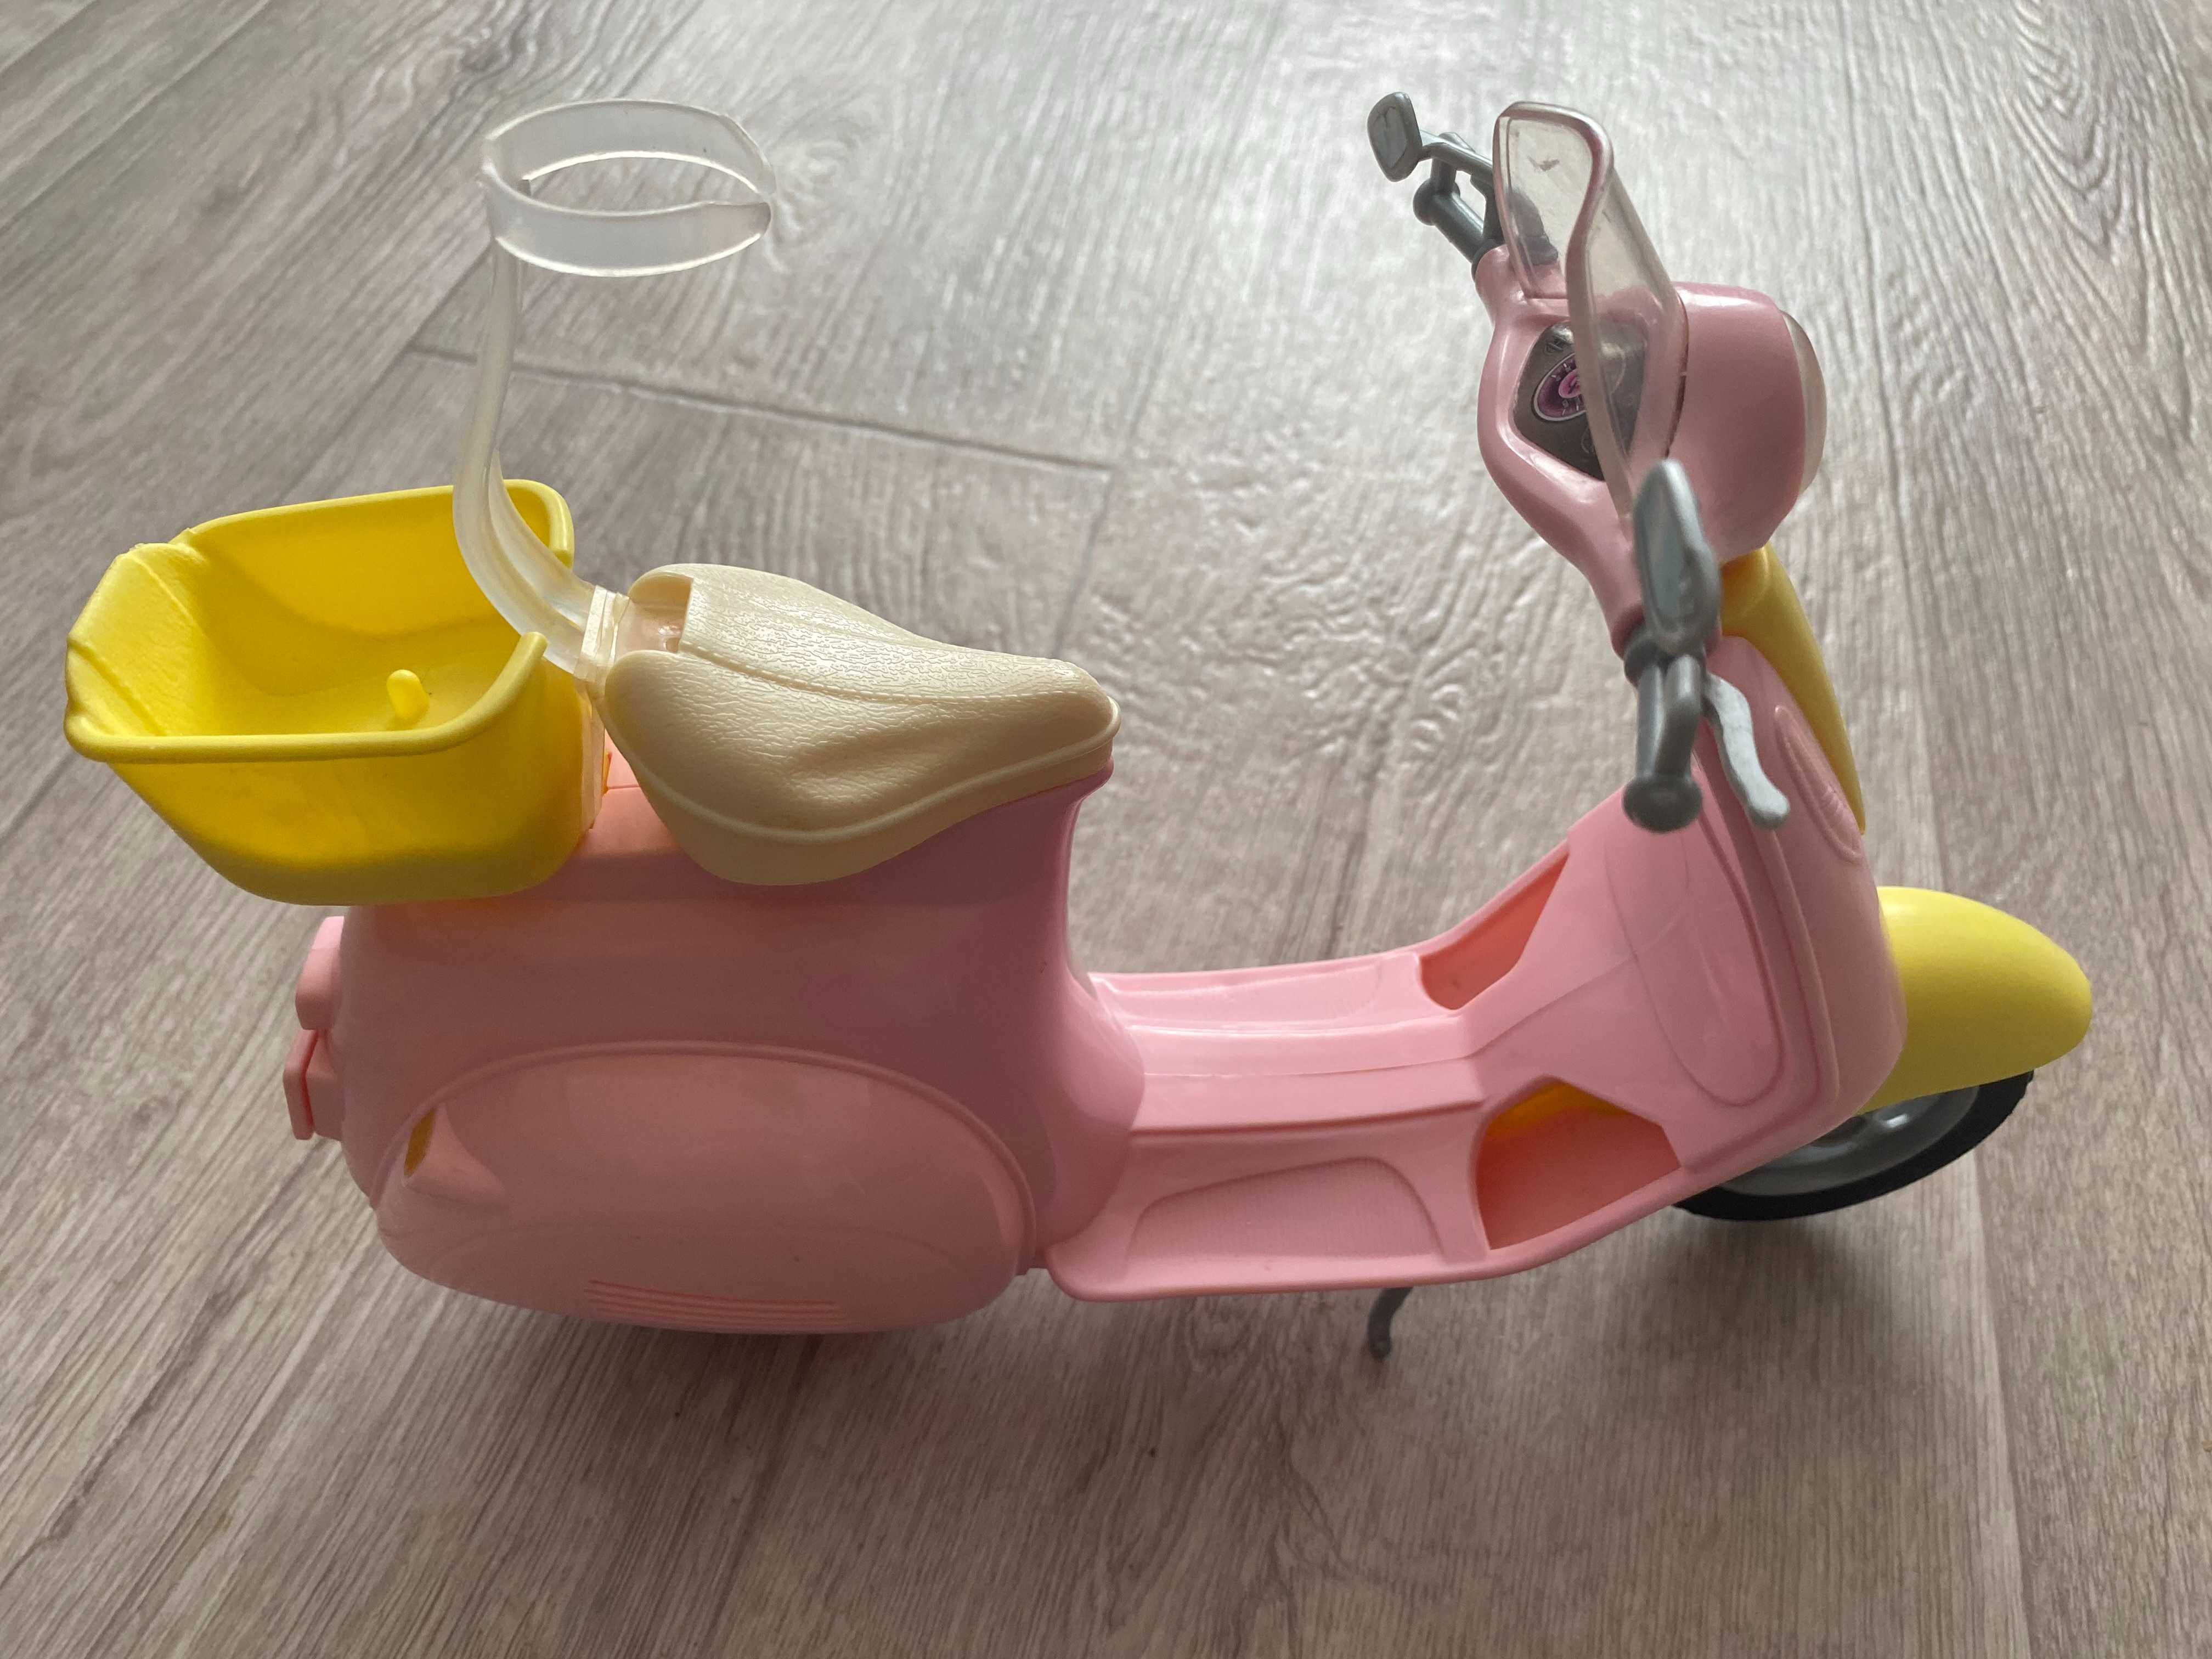 Ляльковий мопед, мотоцикл, скутер Барбі (Barbie)